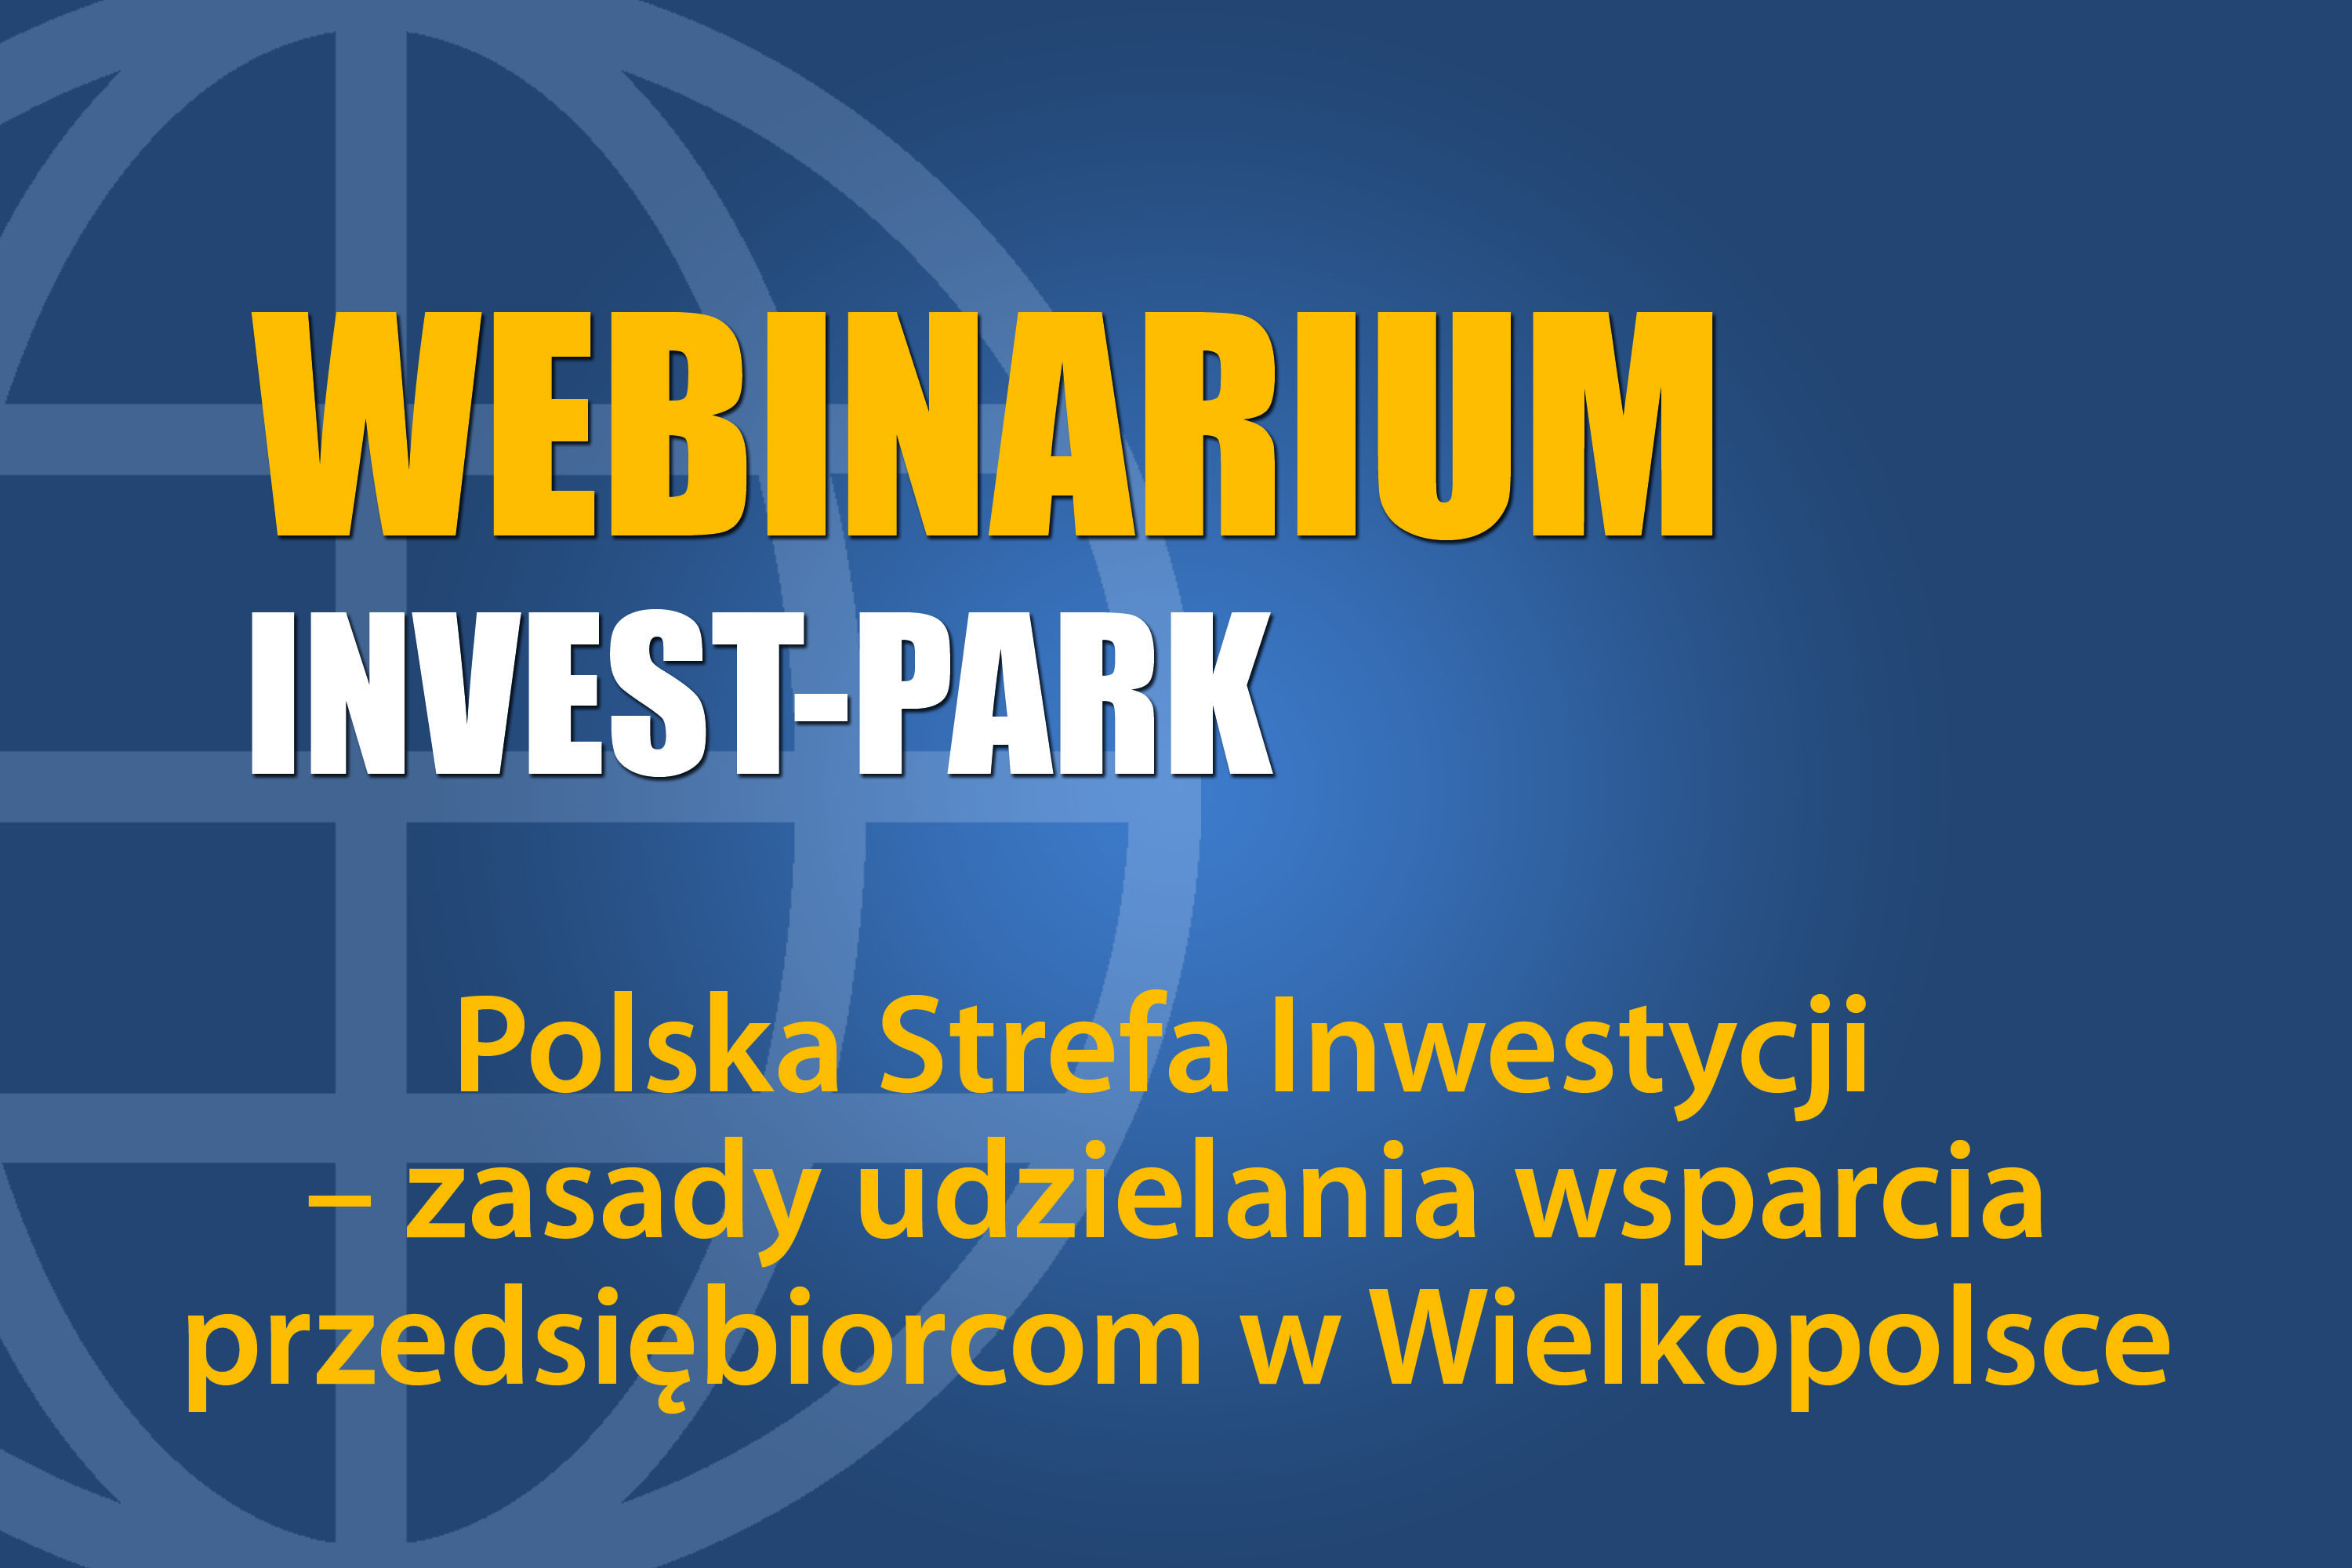 Polska Strefa Inwestycji – zasady udzielania wsparcia przedsiębiorcom w Wielkopolsce